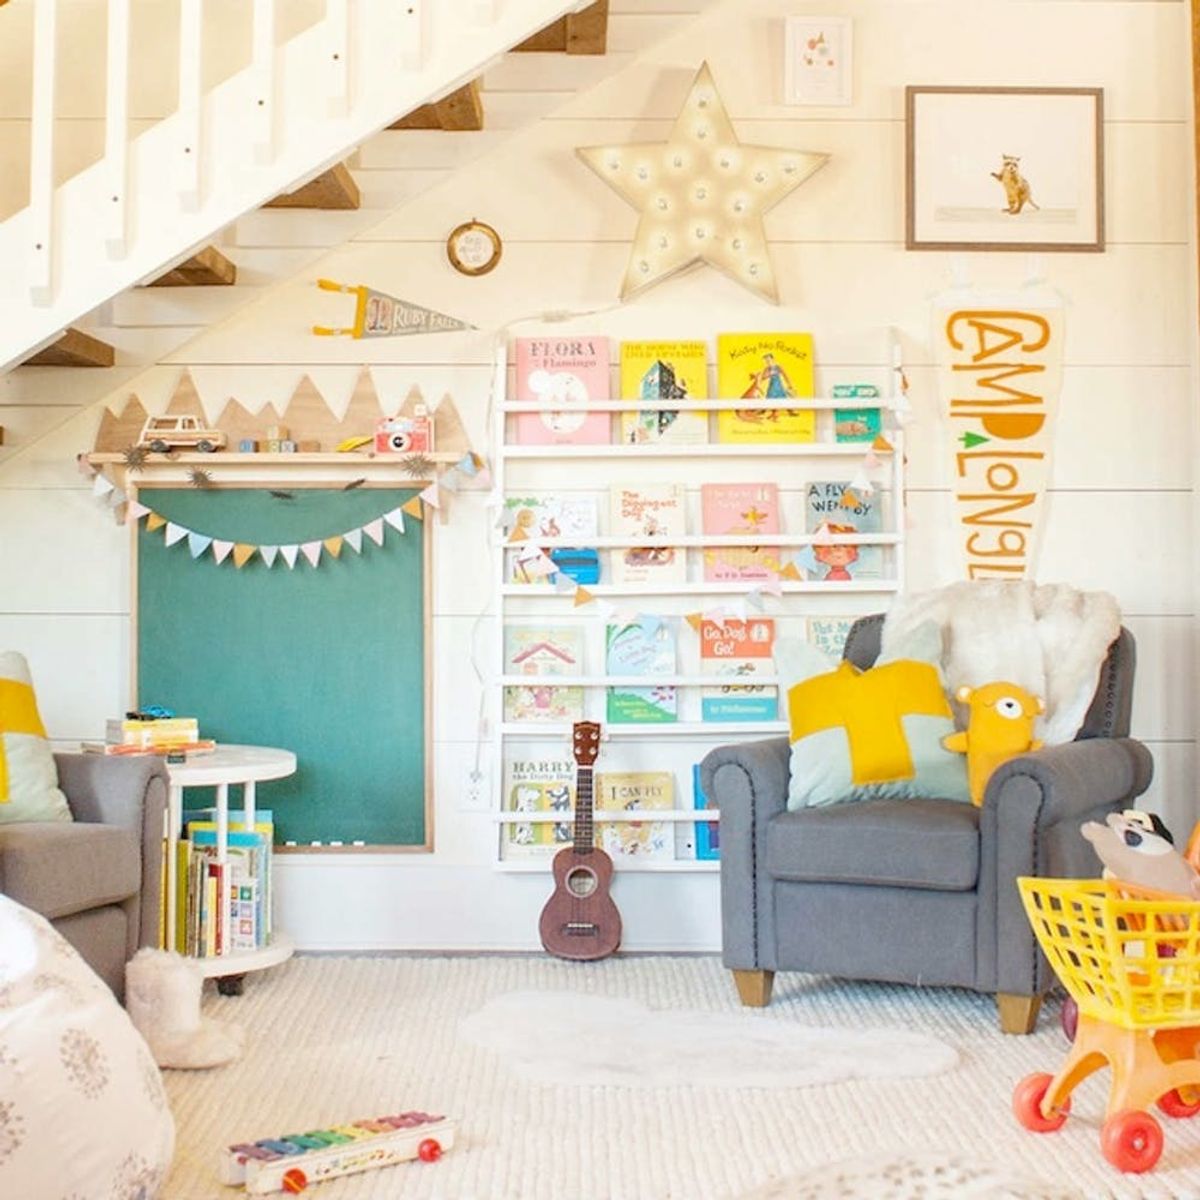 13 Playroom Decor Ideas the Whole Family Can Enjoy